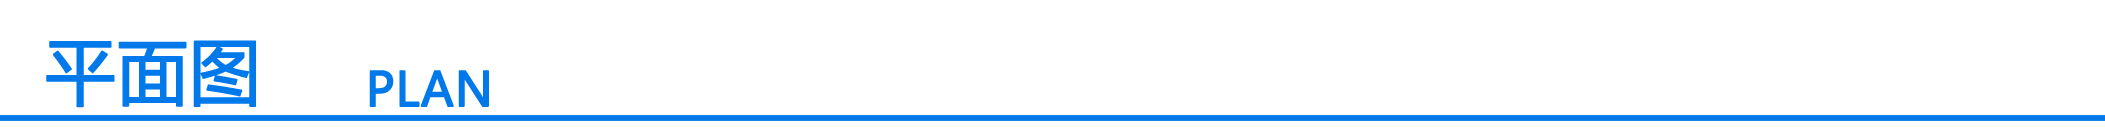 分割符号（平面图）.png